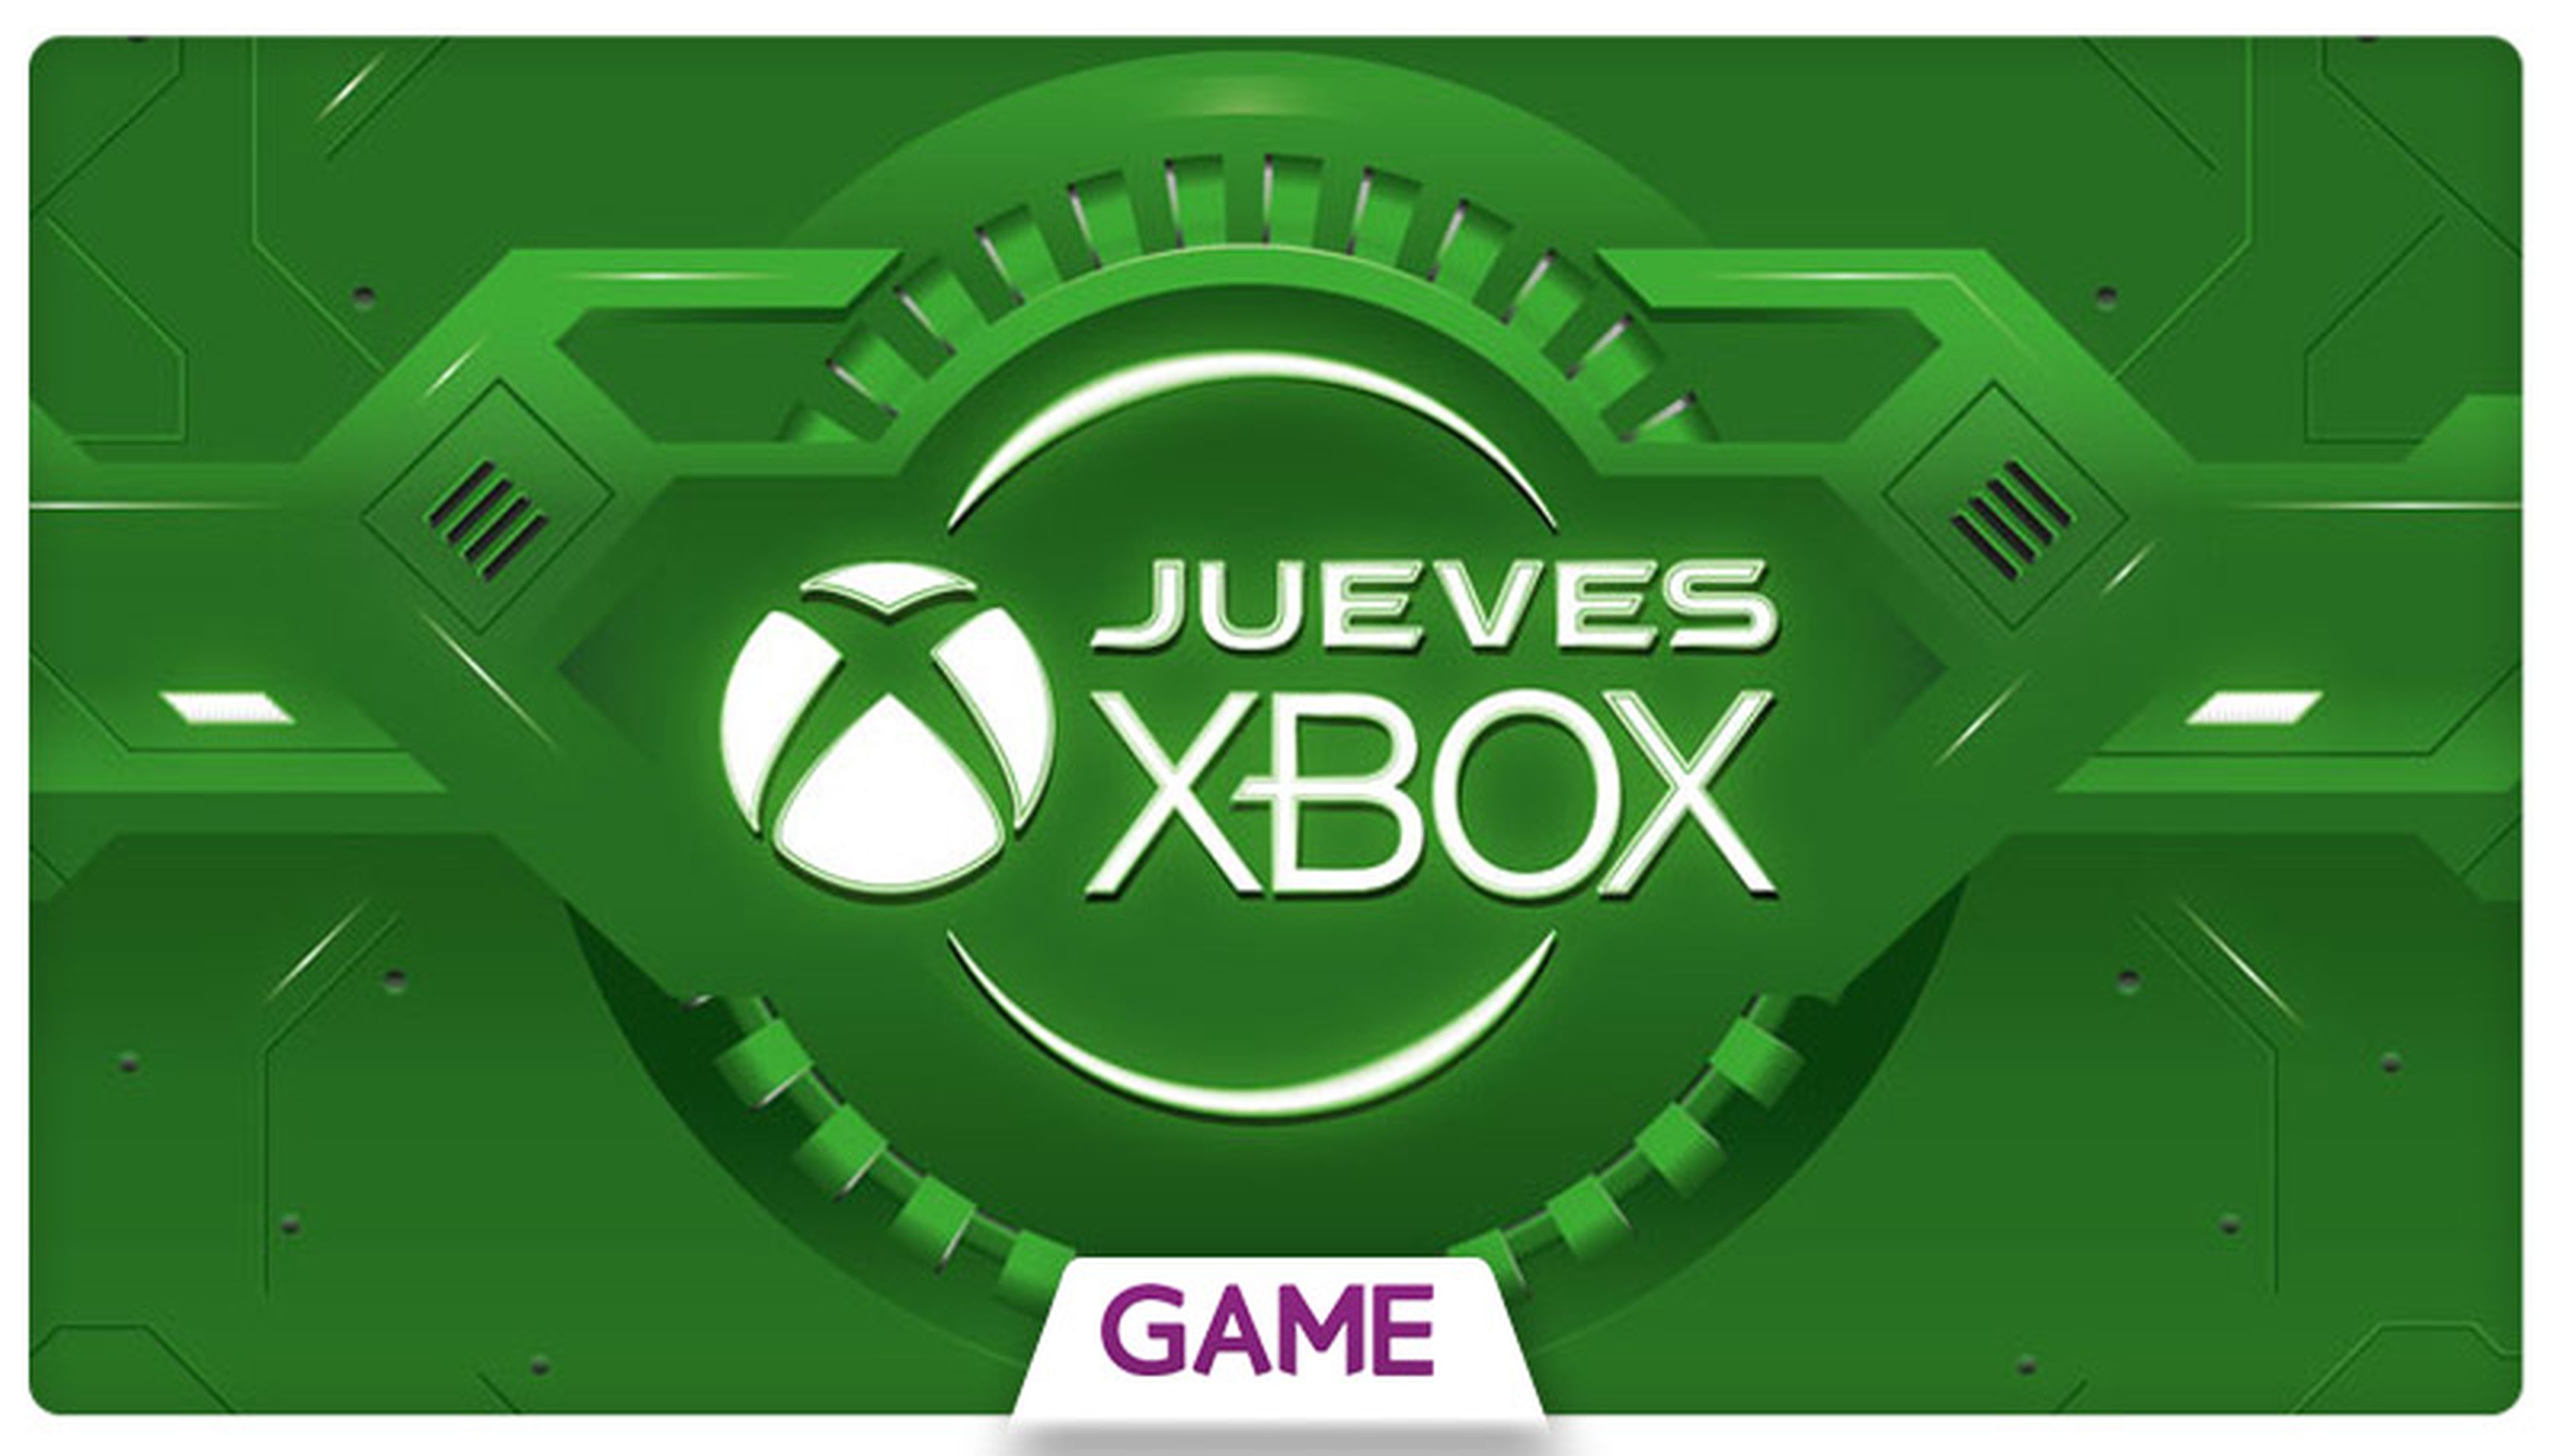 Jueves Xbox en GAME: Ofertas del 11/02/2016